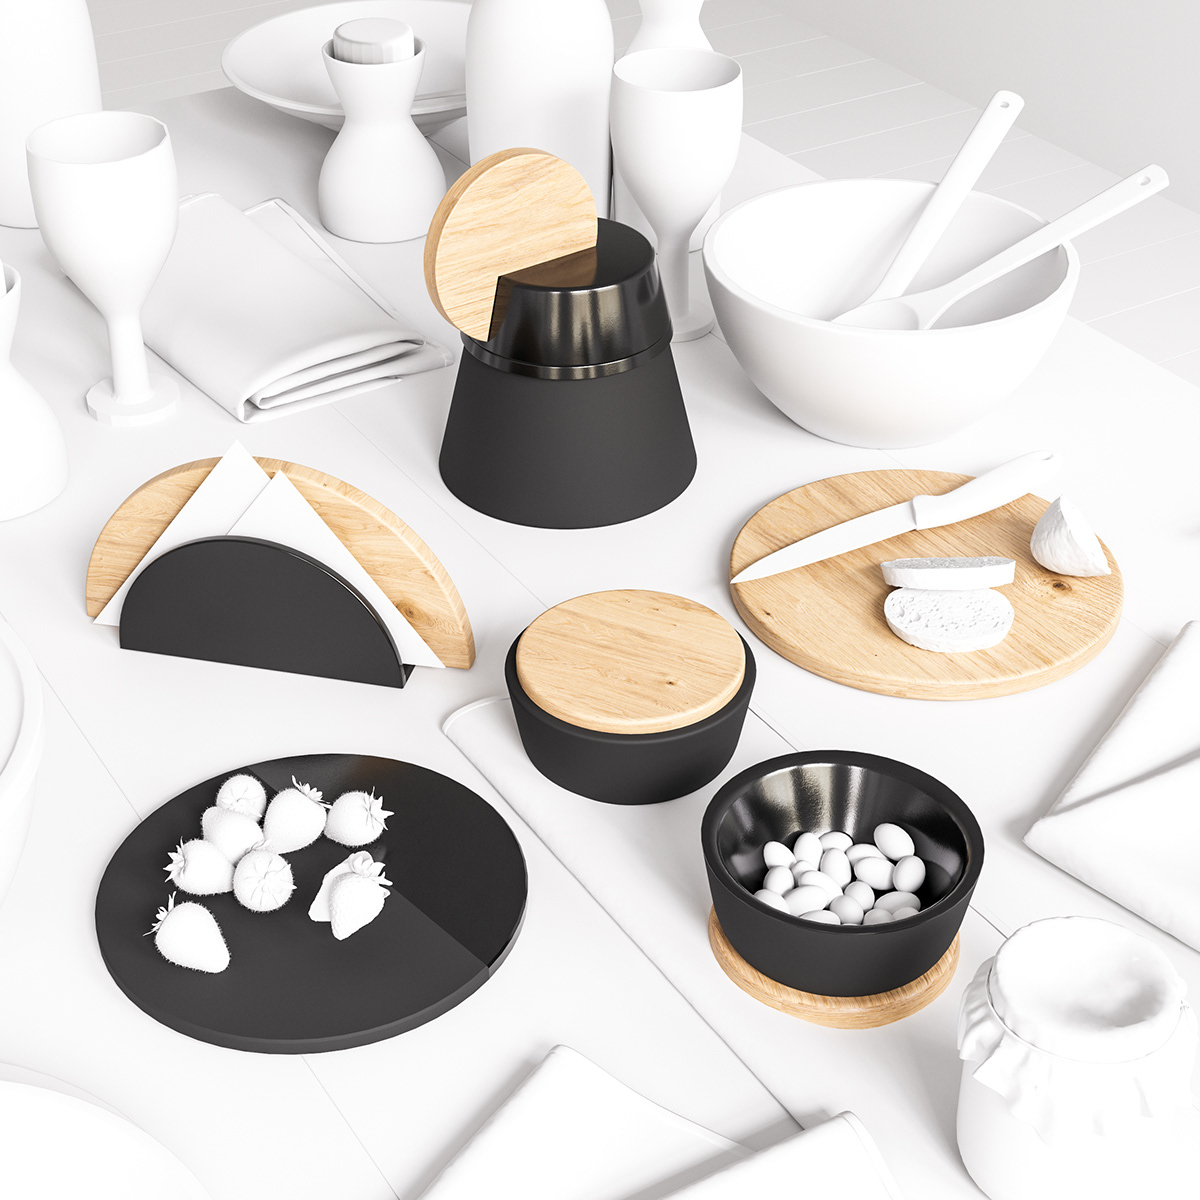 product design craft tableware accessories moon ceramic black handicraft